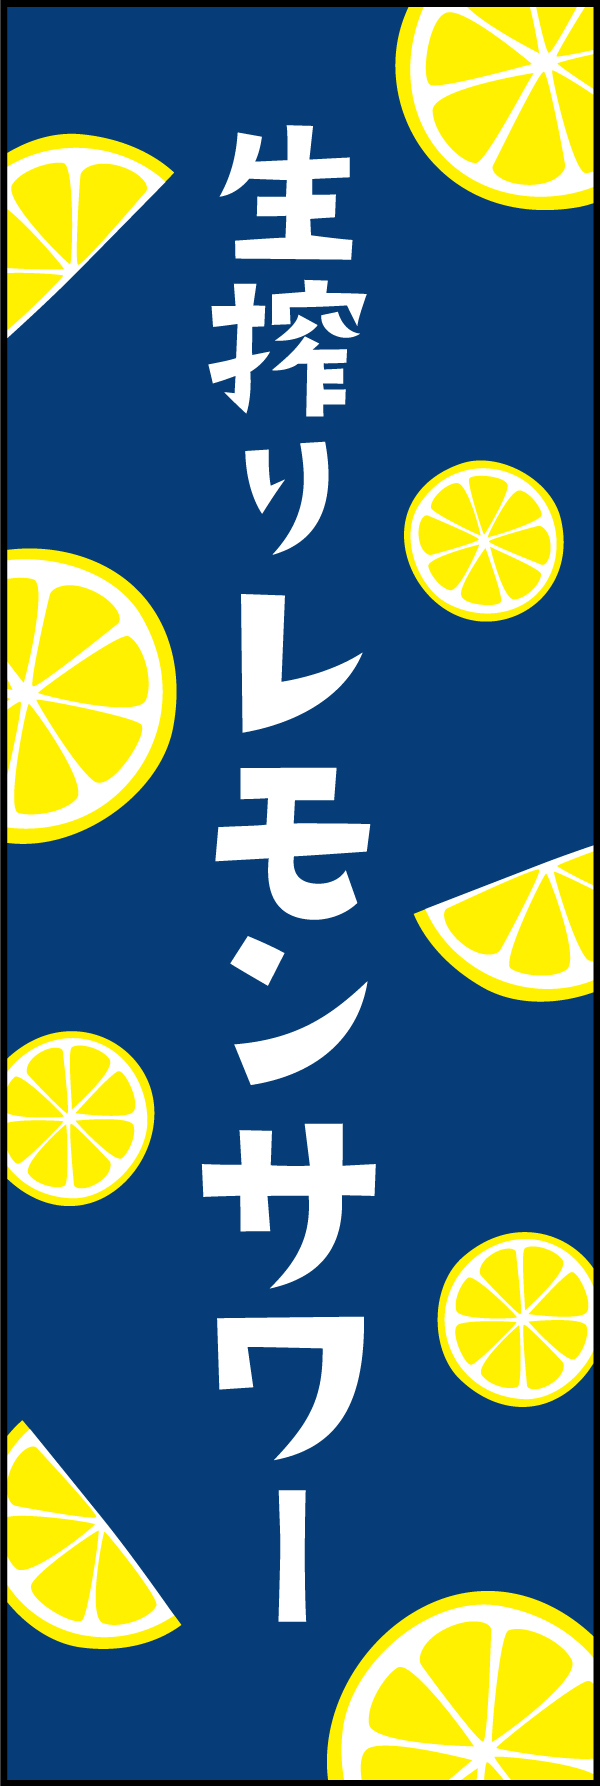 生搾りレモンサワー 204_01「生搾りレモンサワー」ののぼりです。レモンのイラストが目立つデザインです。（Y.M） 